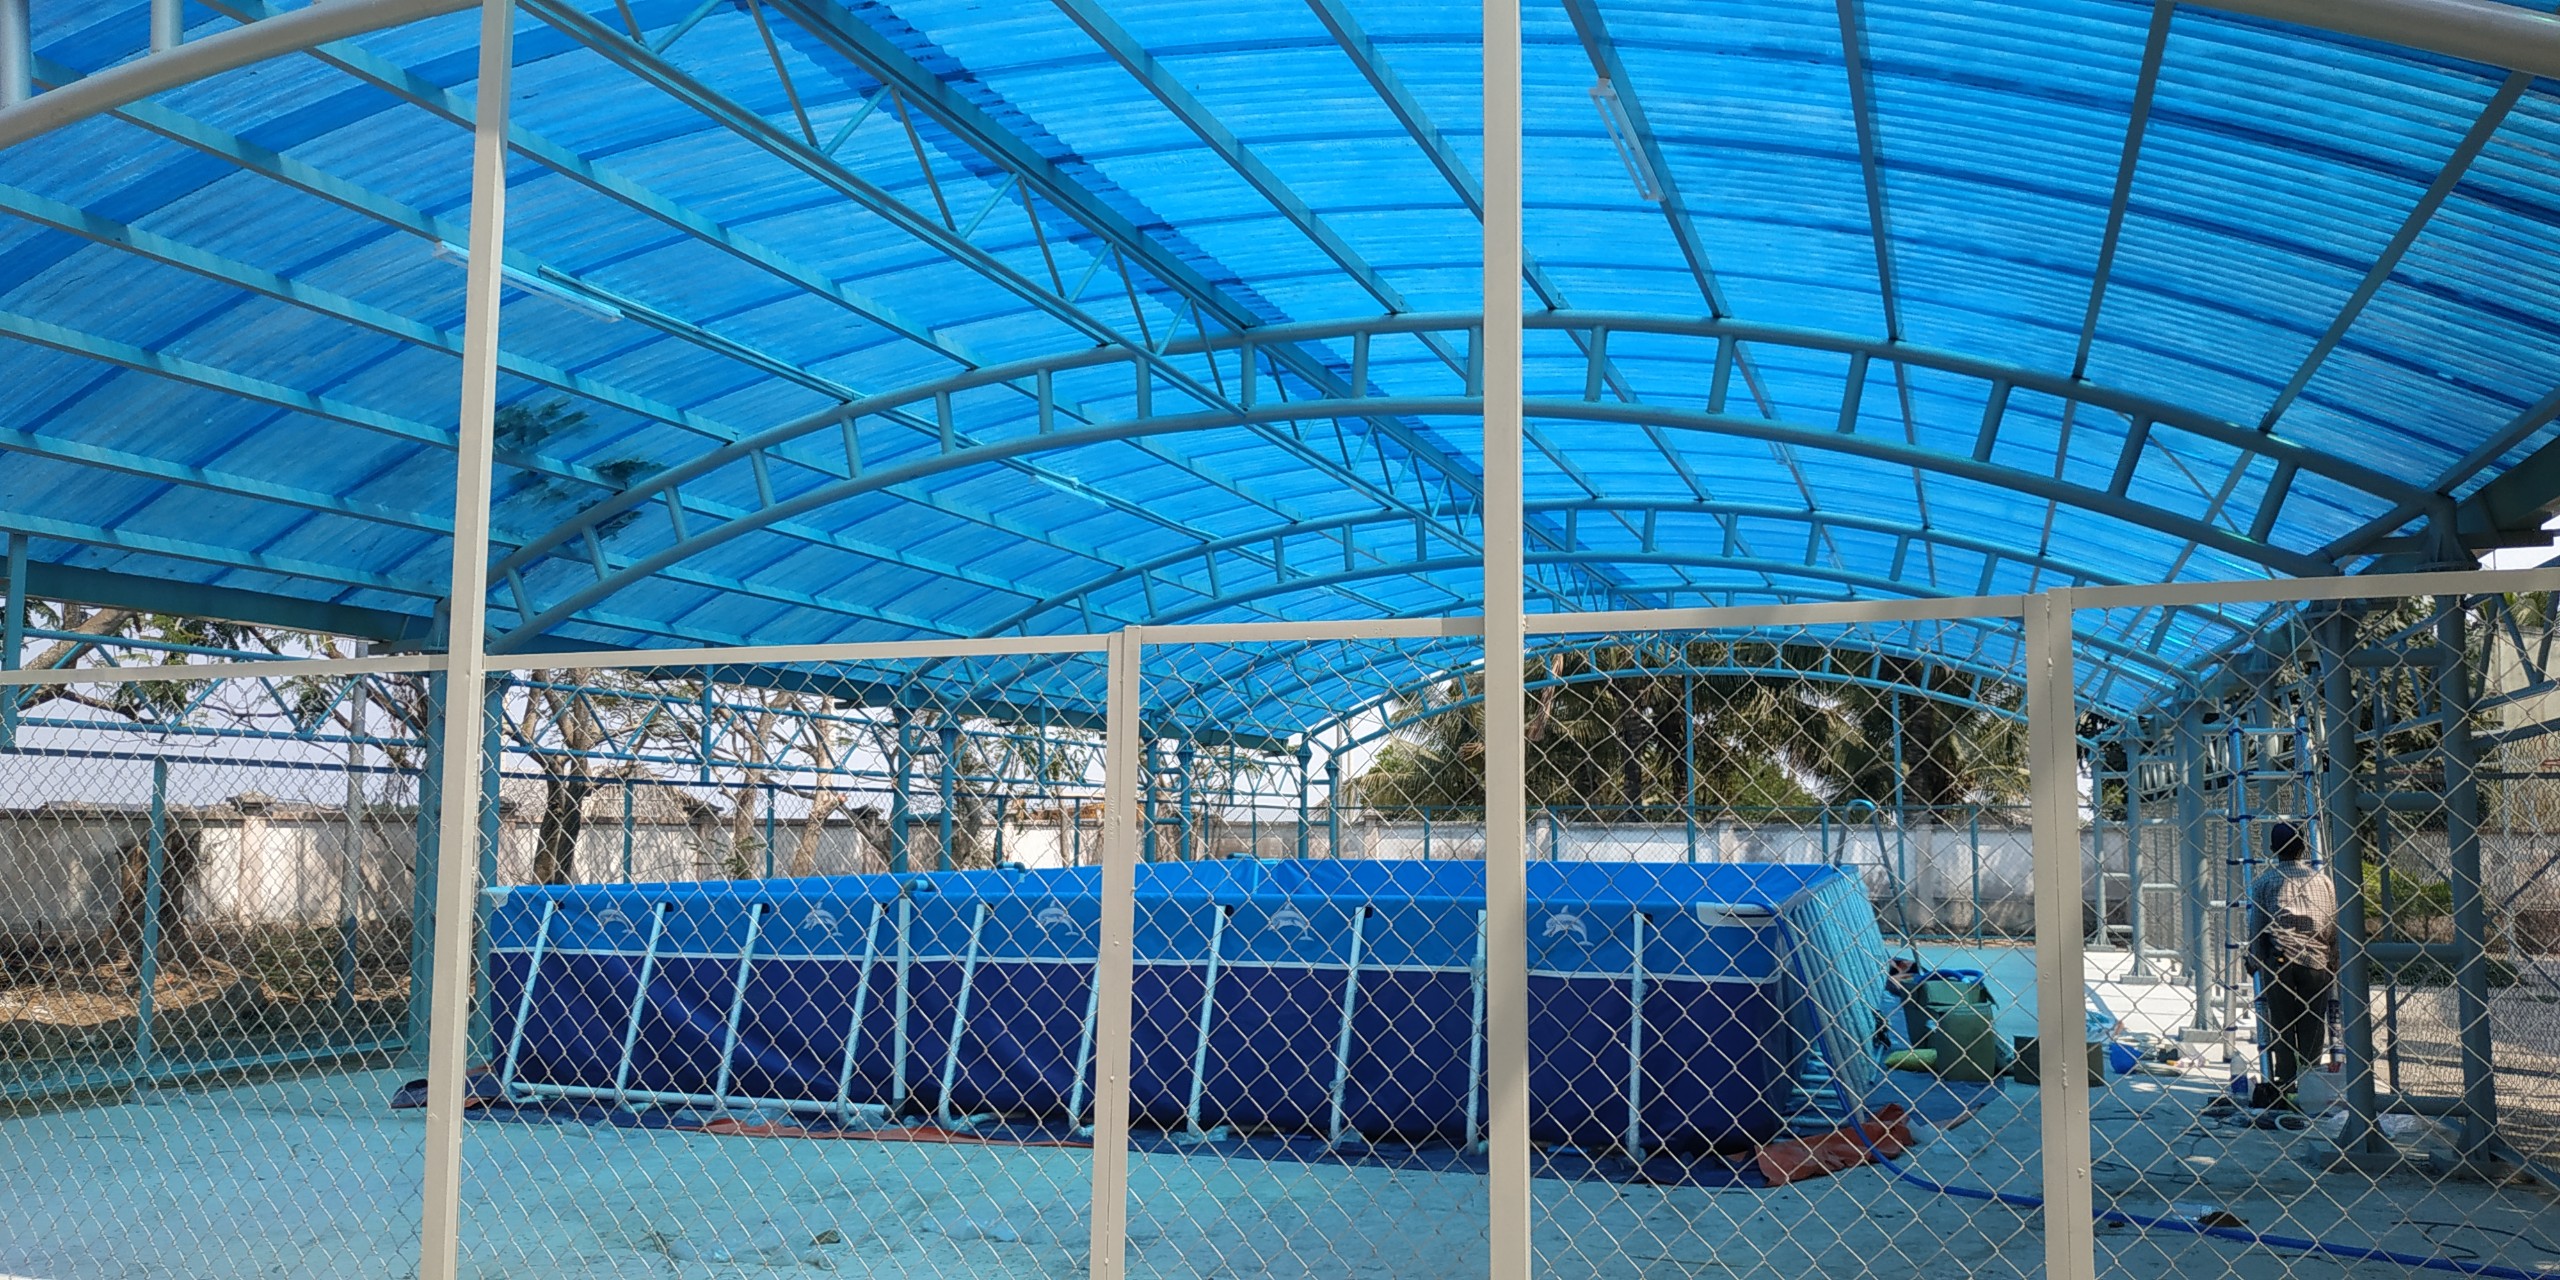 Bể Bơi Di Động Lắp Ghép Tại Cao Bằng Hoạt Động Từ 2019 Đến Này 17